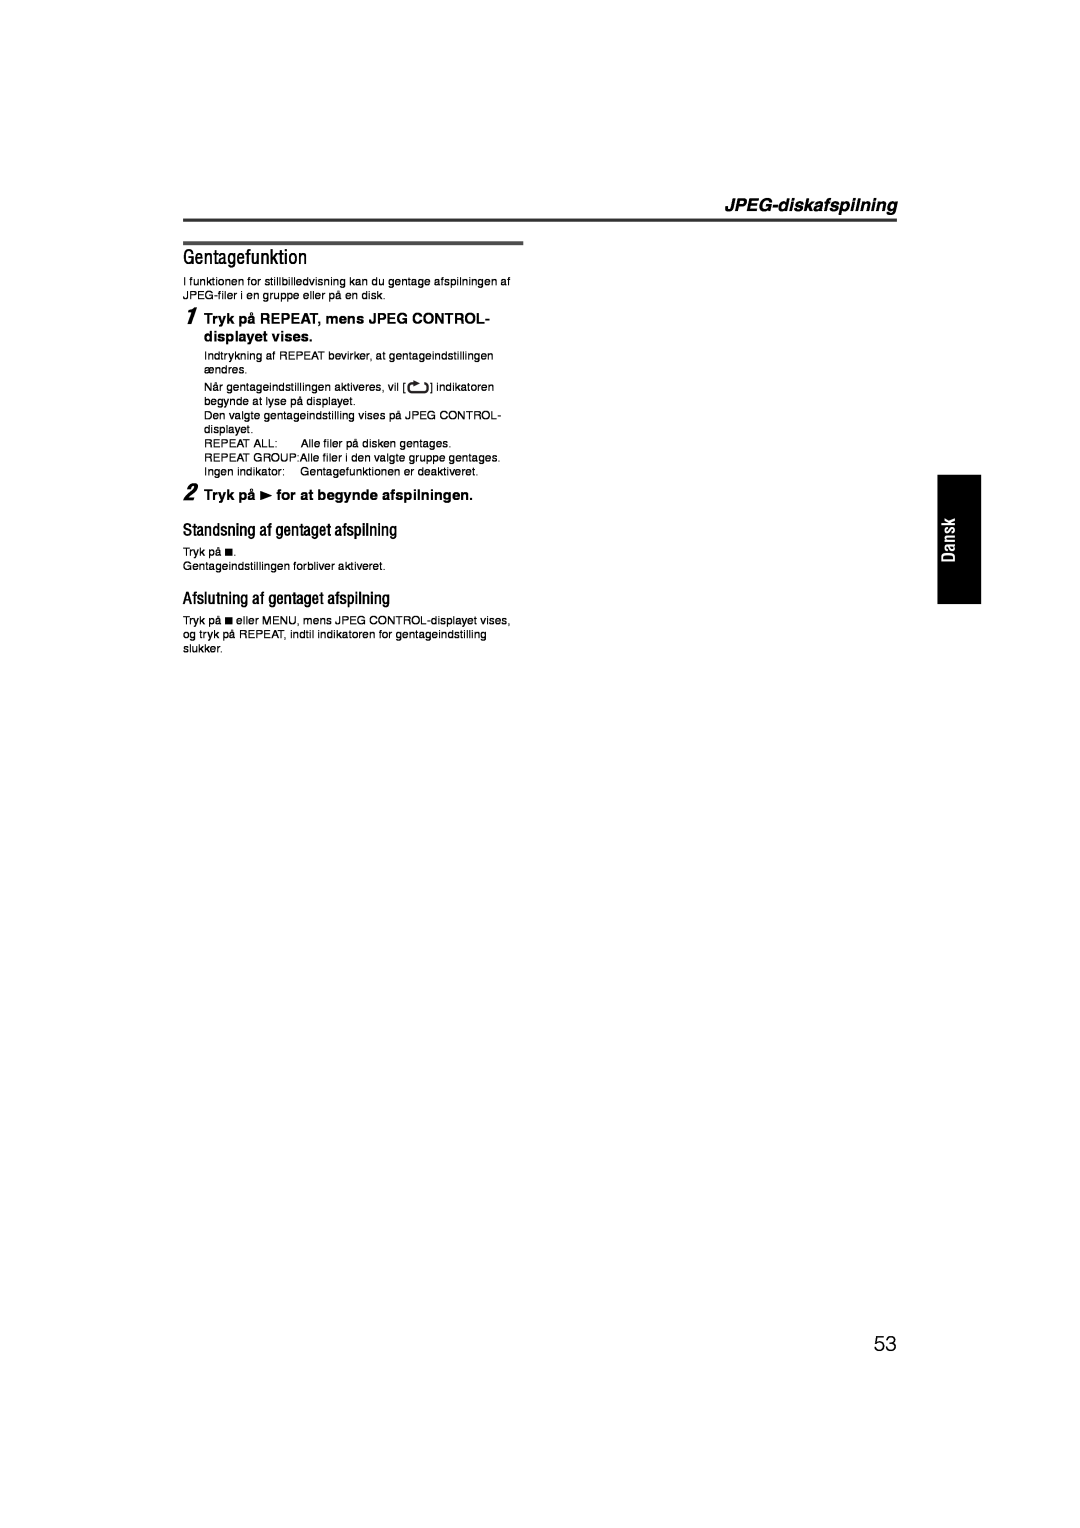 JVC RX-ES1SL manual Gentagefunktion, JPEG-diskafspilning, Dansk, Standsning af gentaget afspilning 